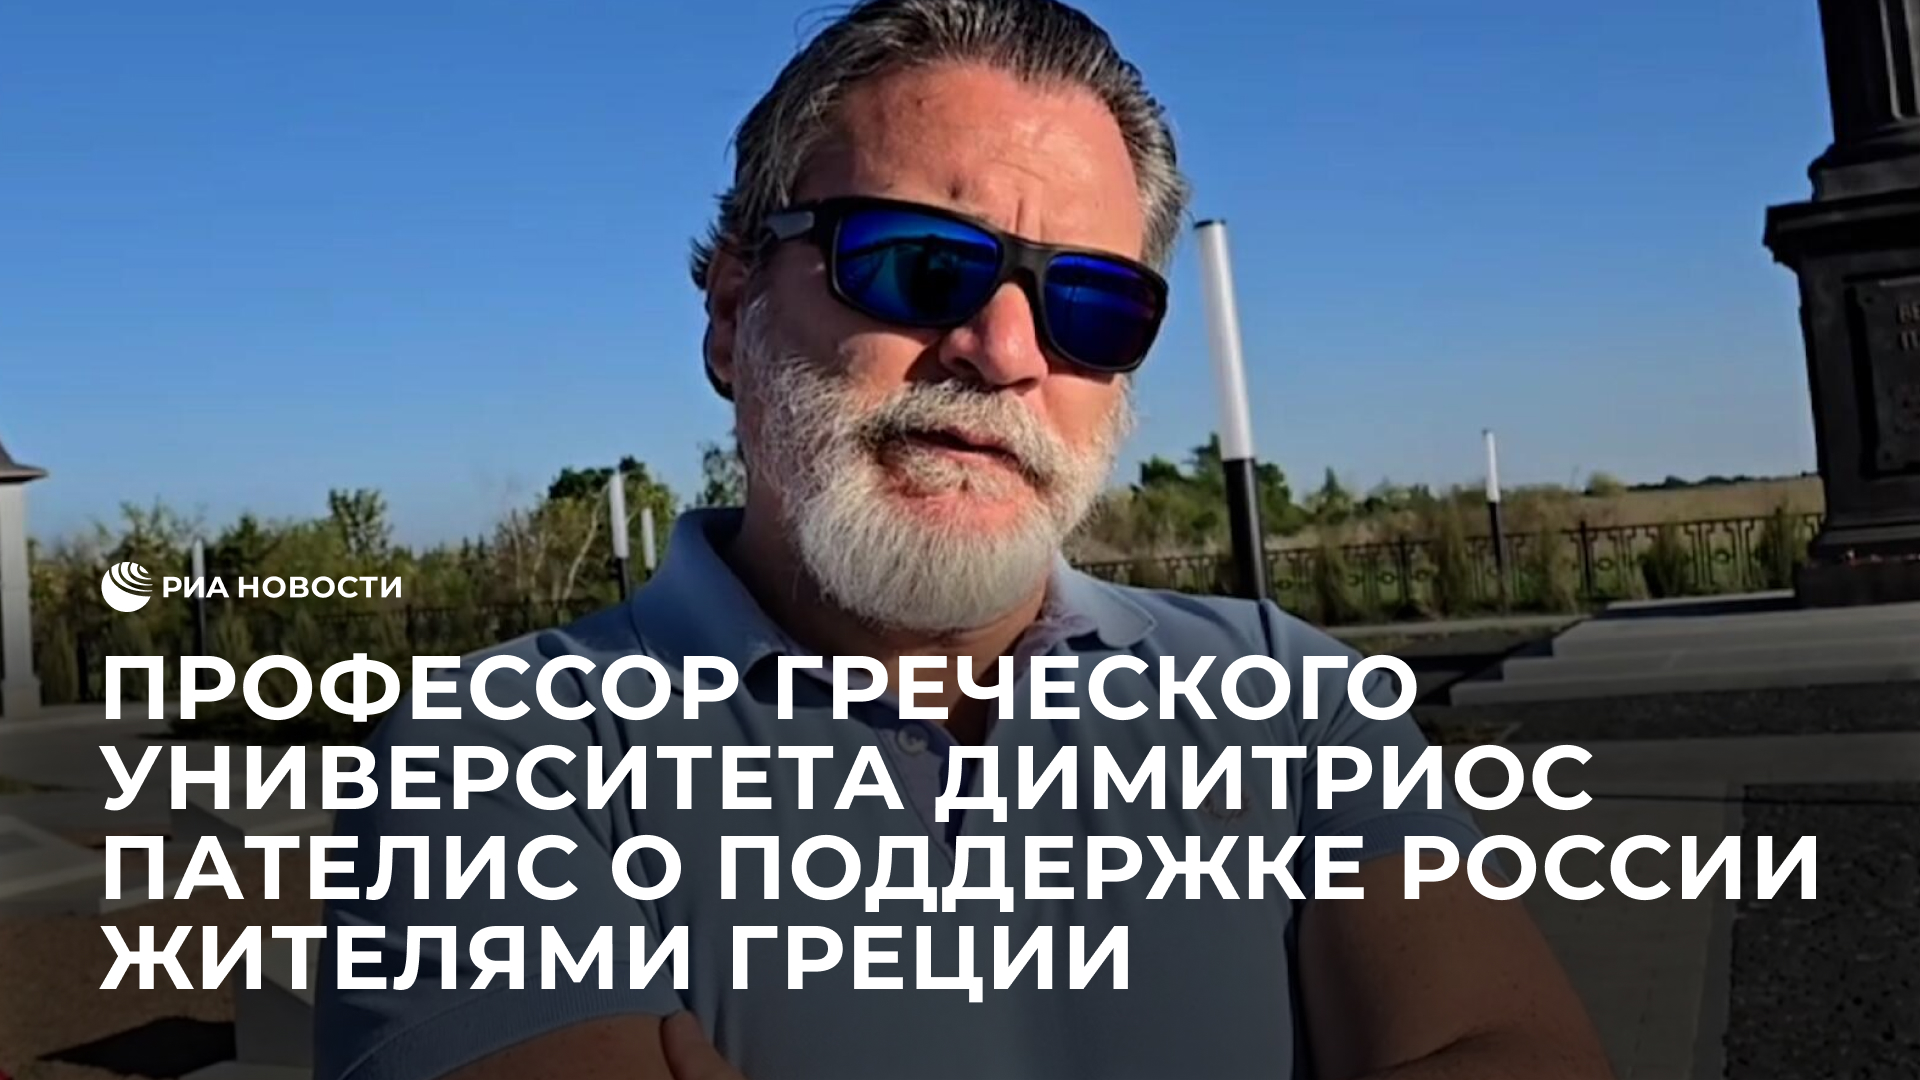 Профессор греческого университета Димитриос Пателис о поддержке России жителями Греции